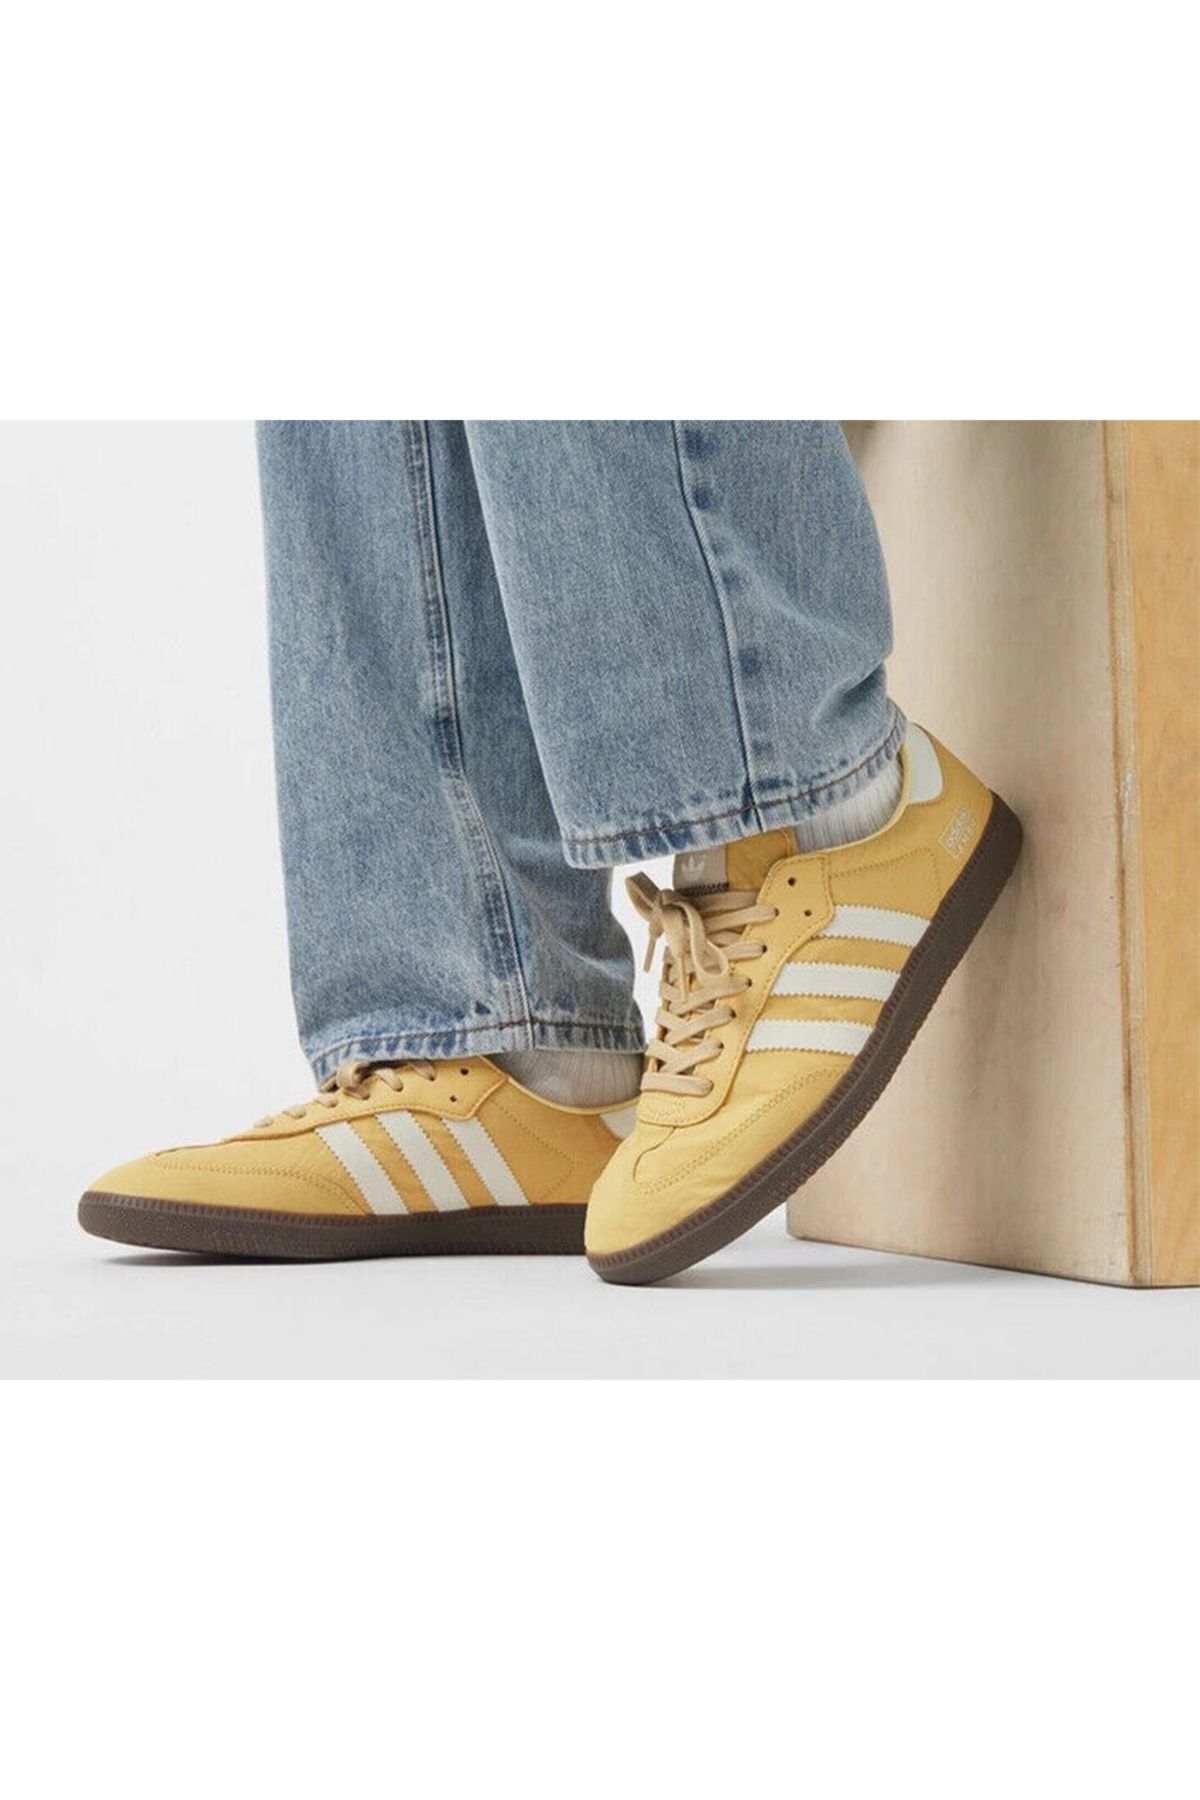 adidas Samba Og Unisex Günlük Ayakkabı Sneaker Sarı